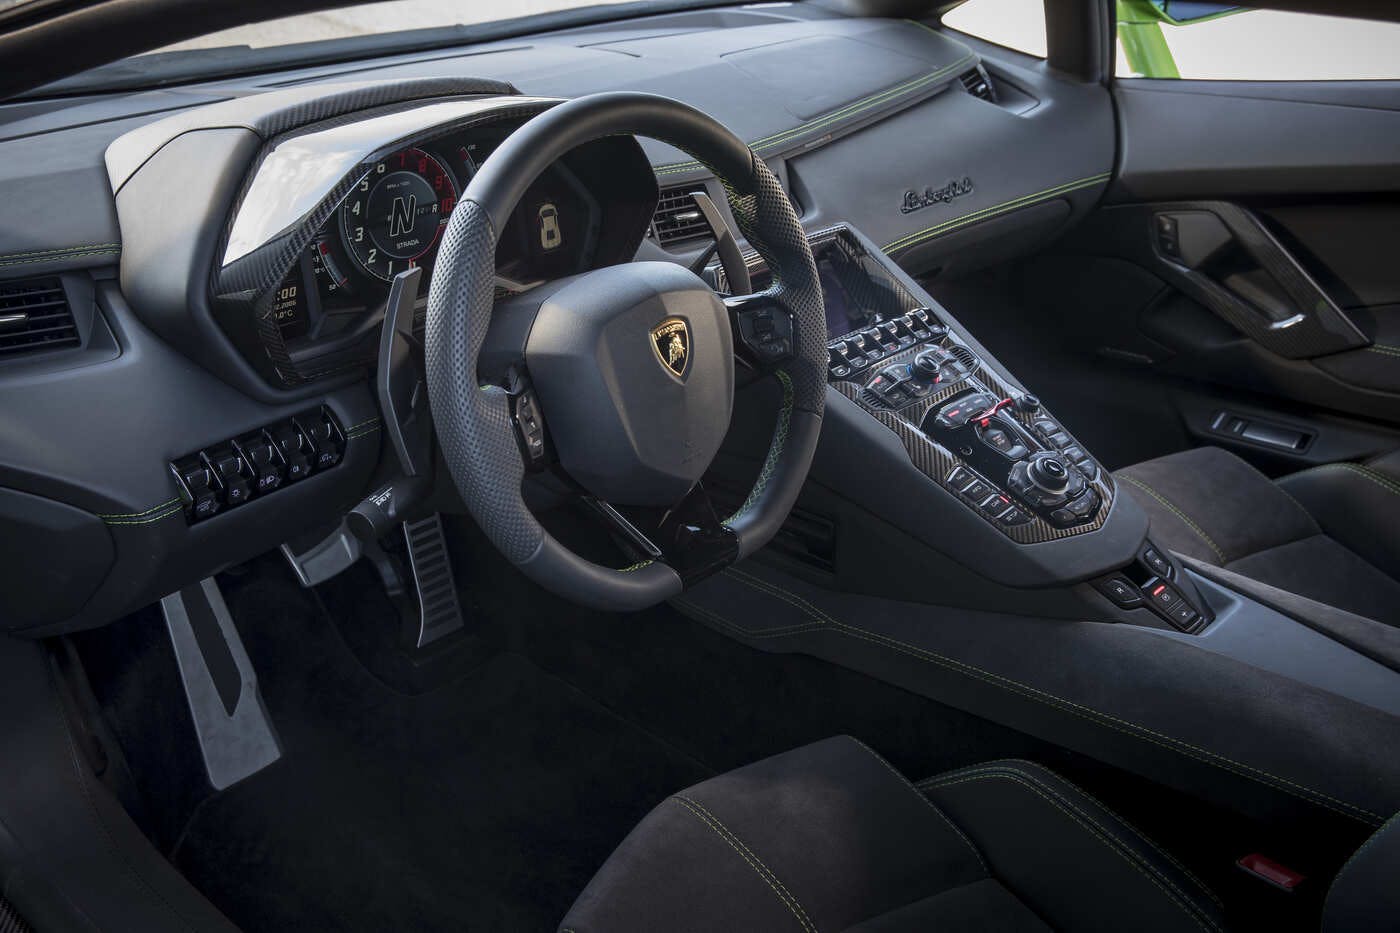 2019 Lamborghini Aventador Comparisons Reviews Pictures